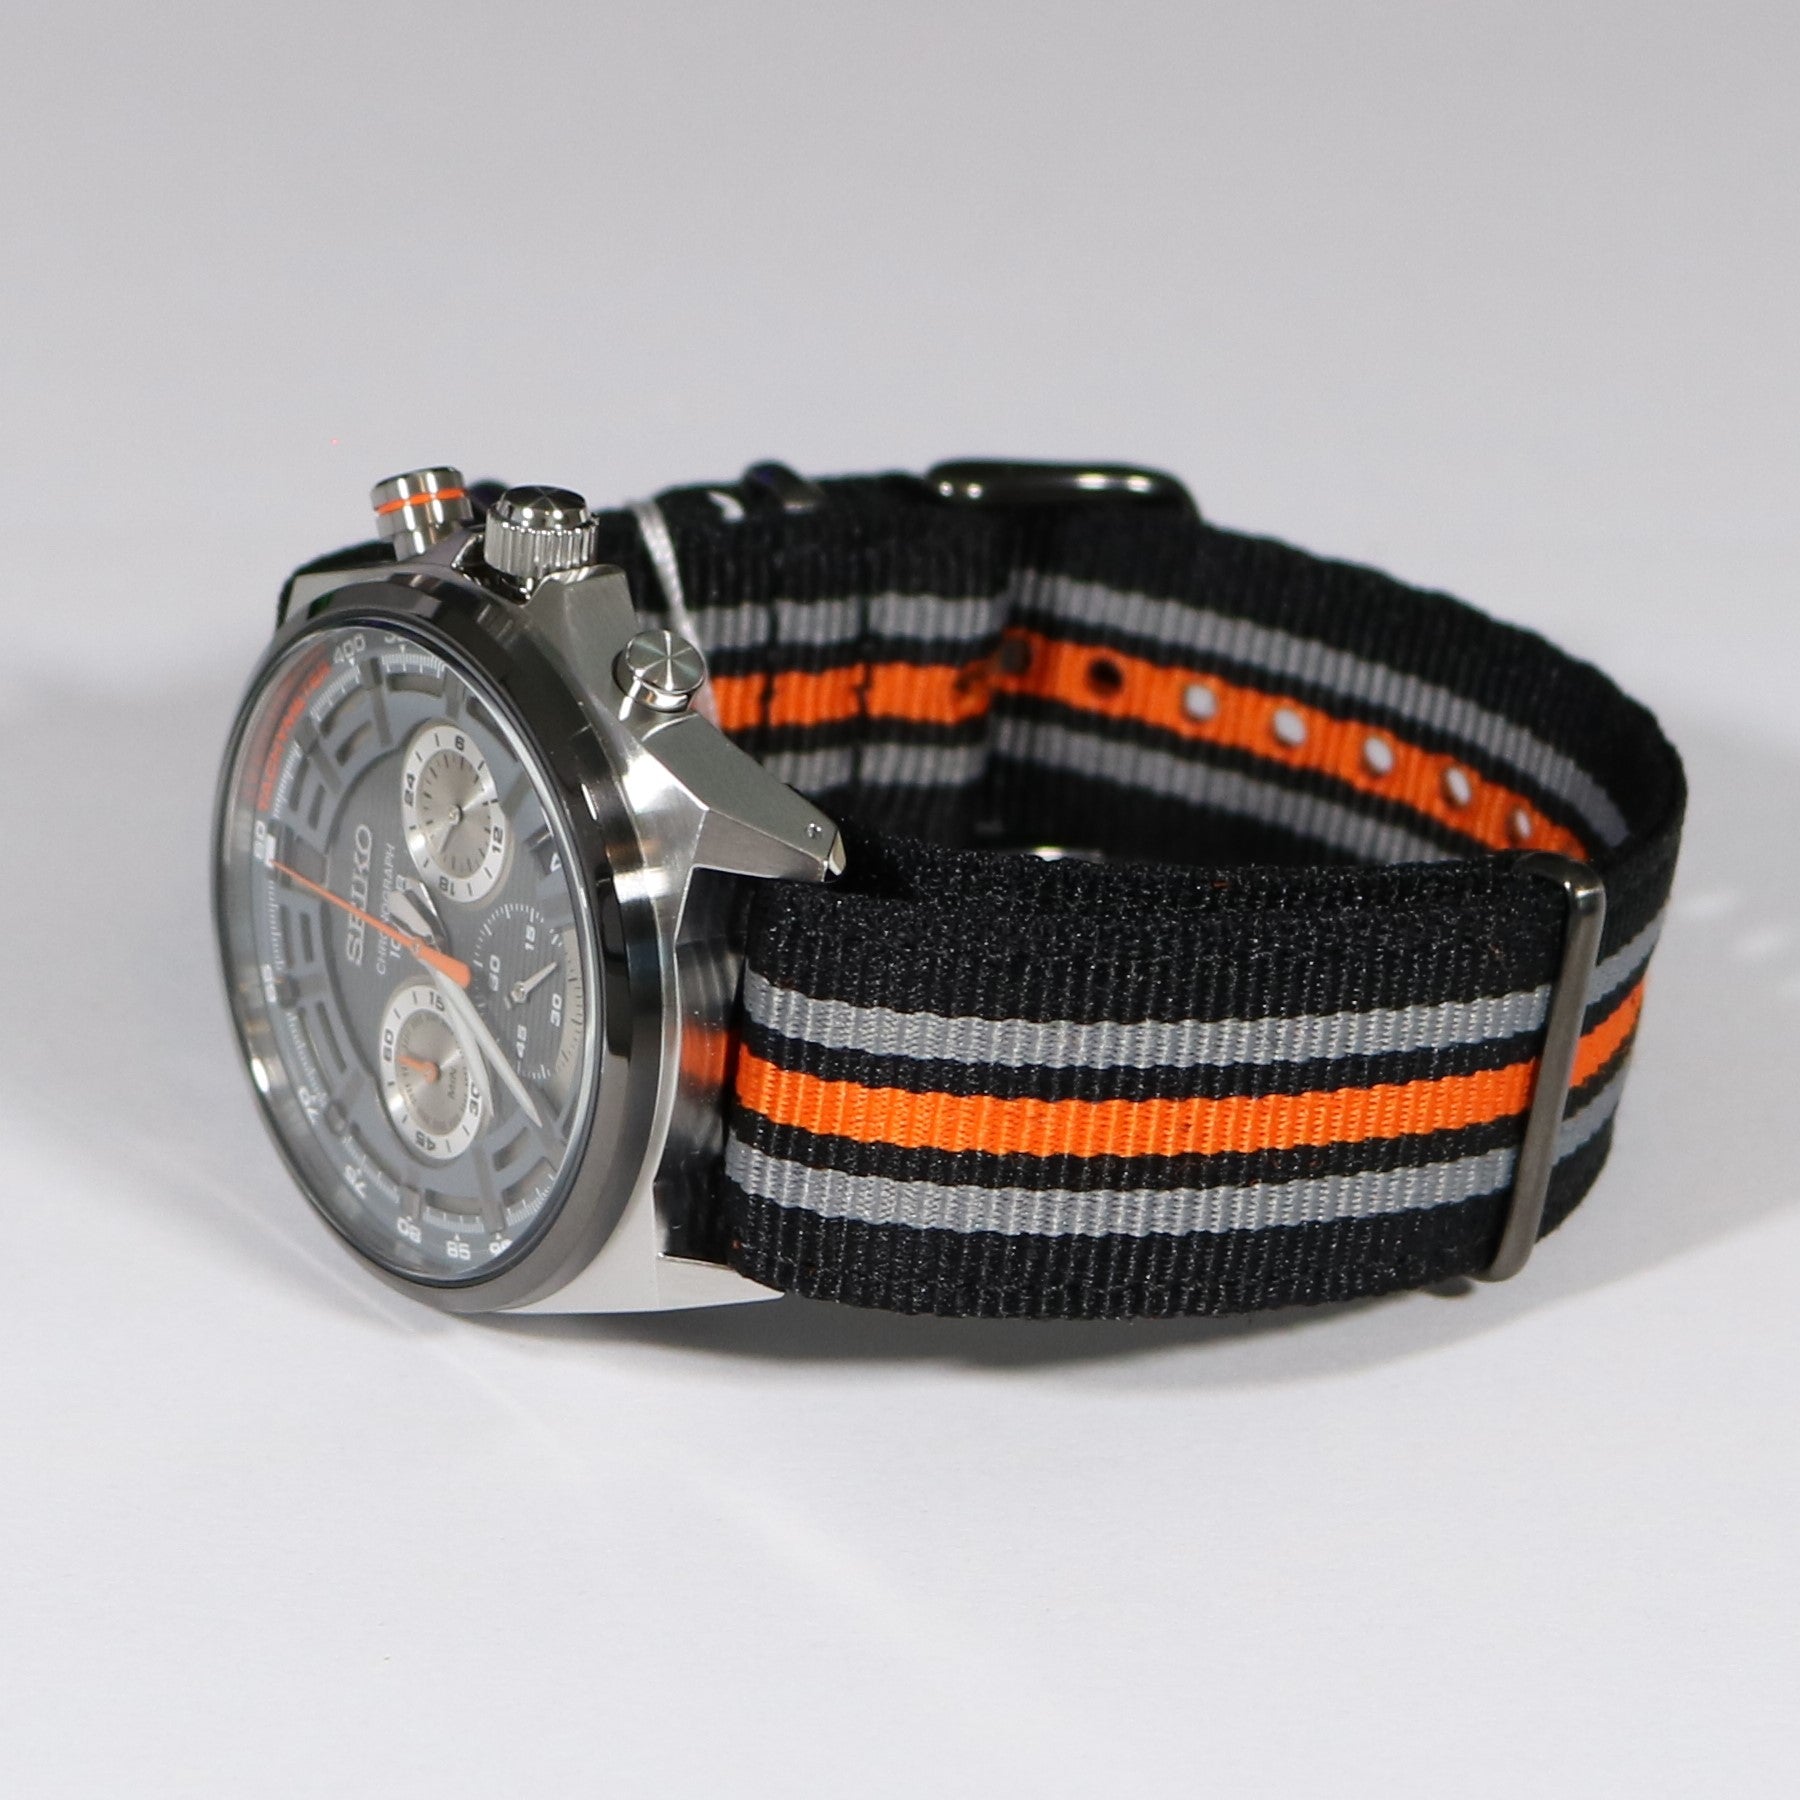 Montre SPORT - SEIKO Homme Bracelet Nylon Gris Foncé, Noir et Orange -  SSB403P1